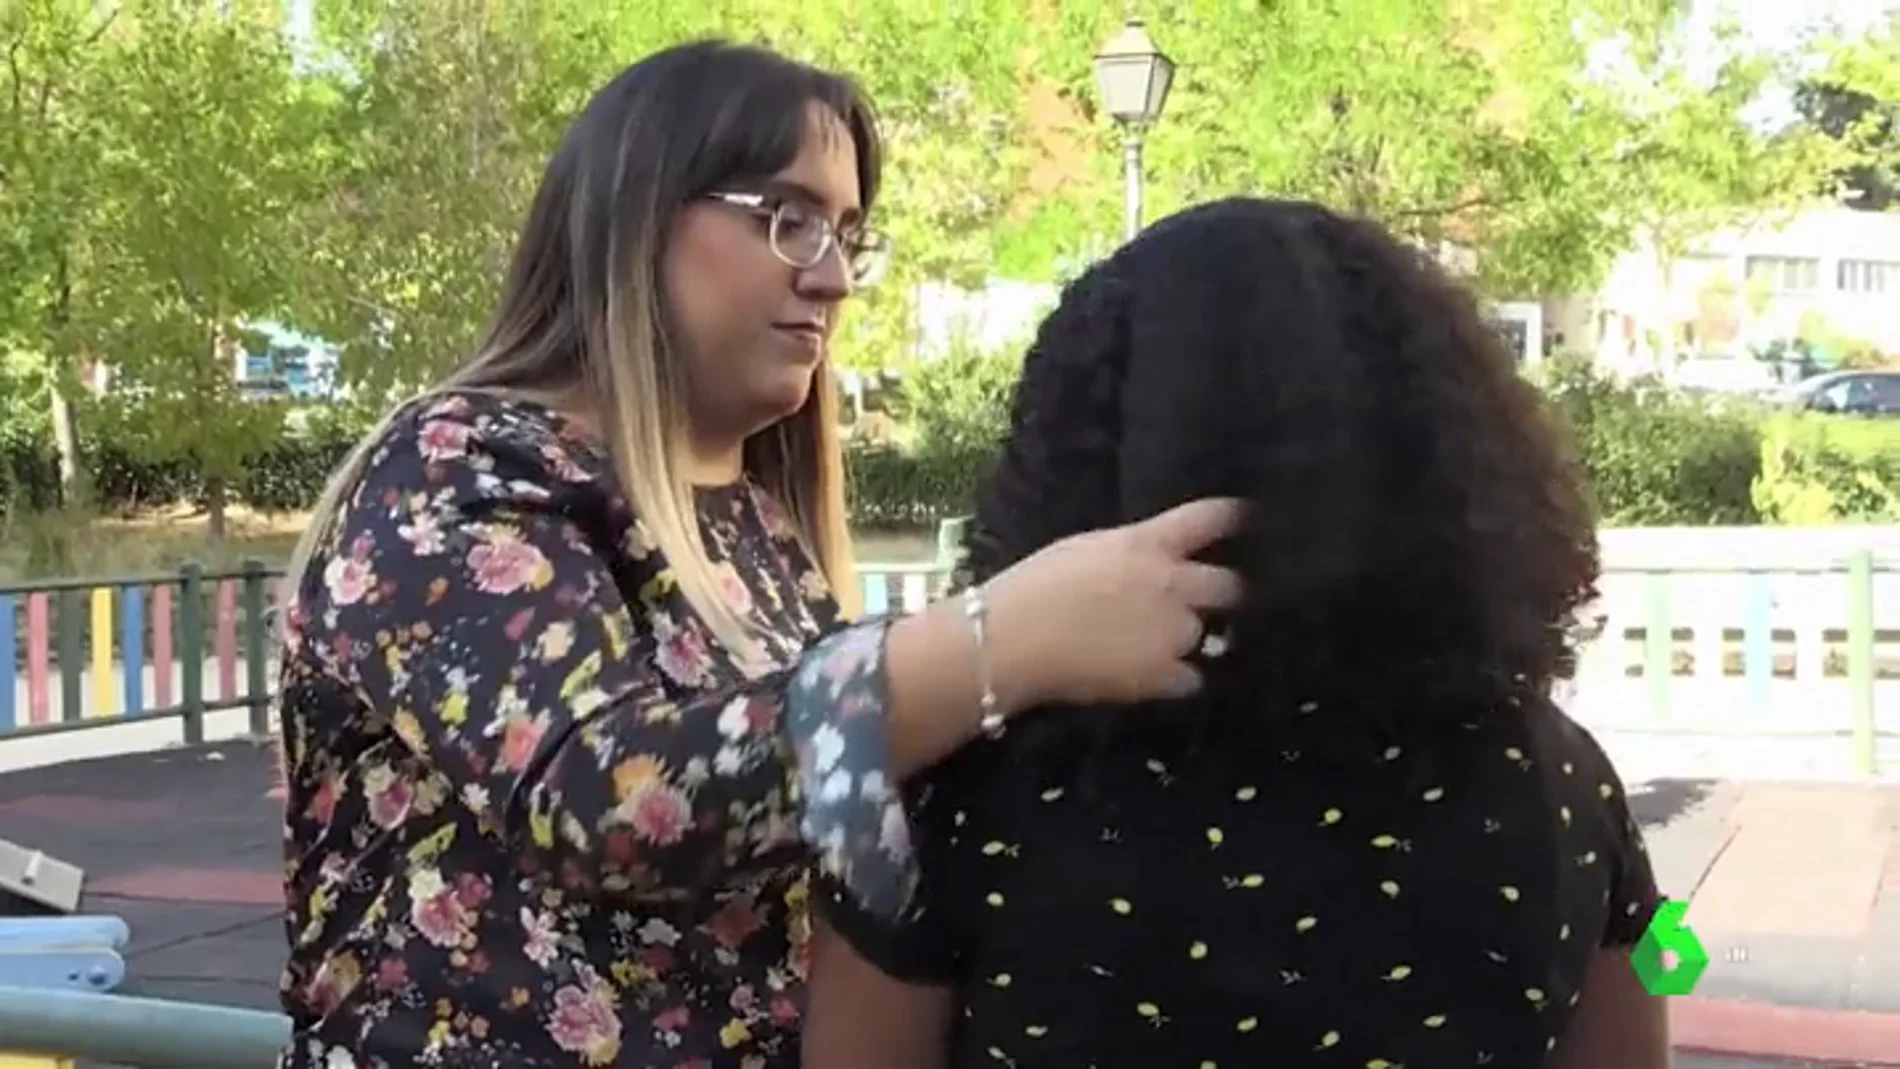 La Comunidad de Madrid, condenanda a pagar 7.500 euros por no evitar el acoso escolar racista a una niña de diez años